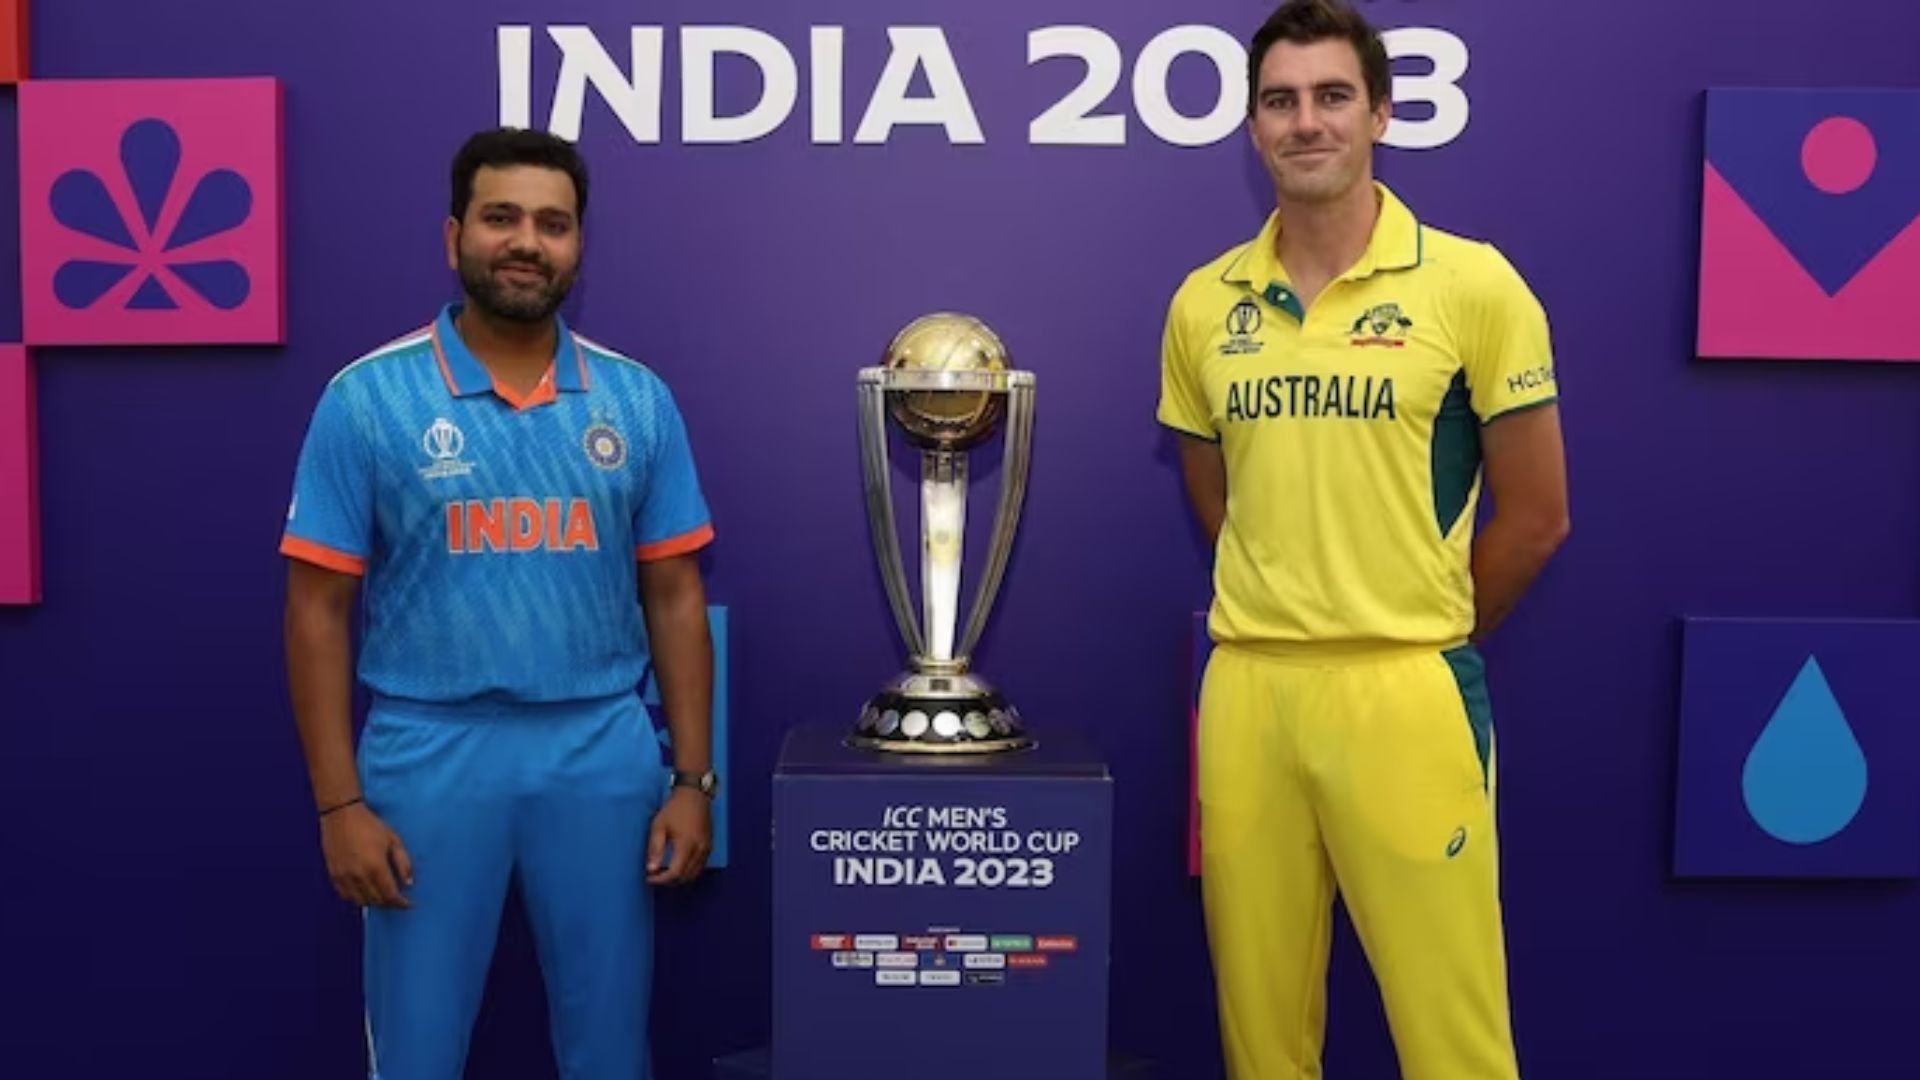 IND vs AUS: भारत-ऑस्ट्रेलिया मैच आज, देखें दोनों टीमों की संभावित प्लेइंग XI, हेड टू हेड आंकड़े